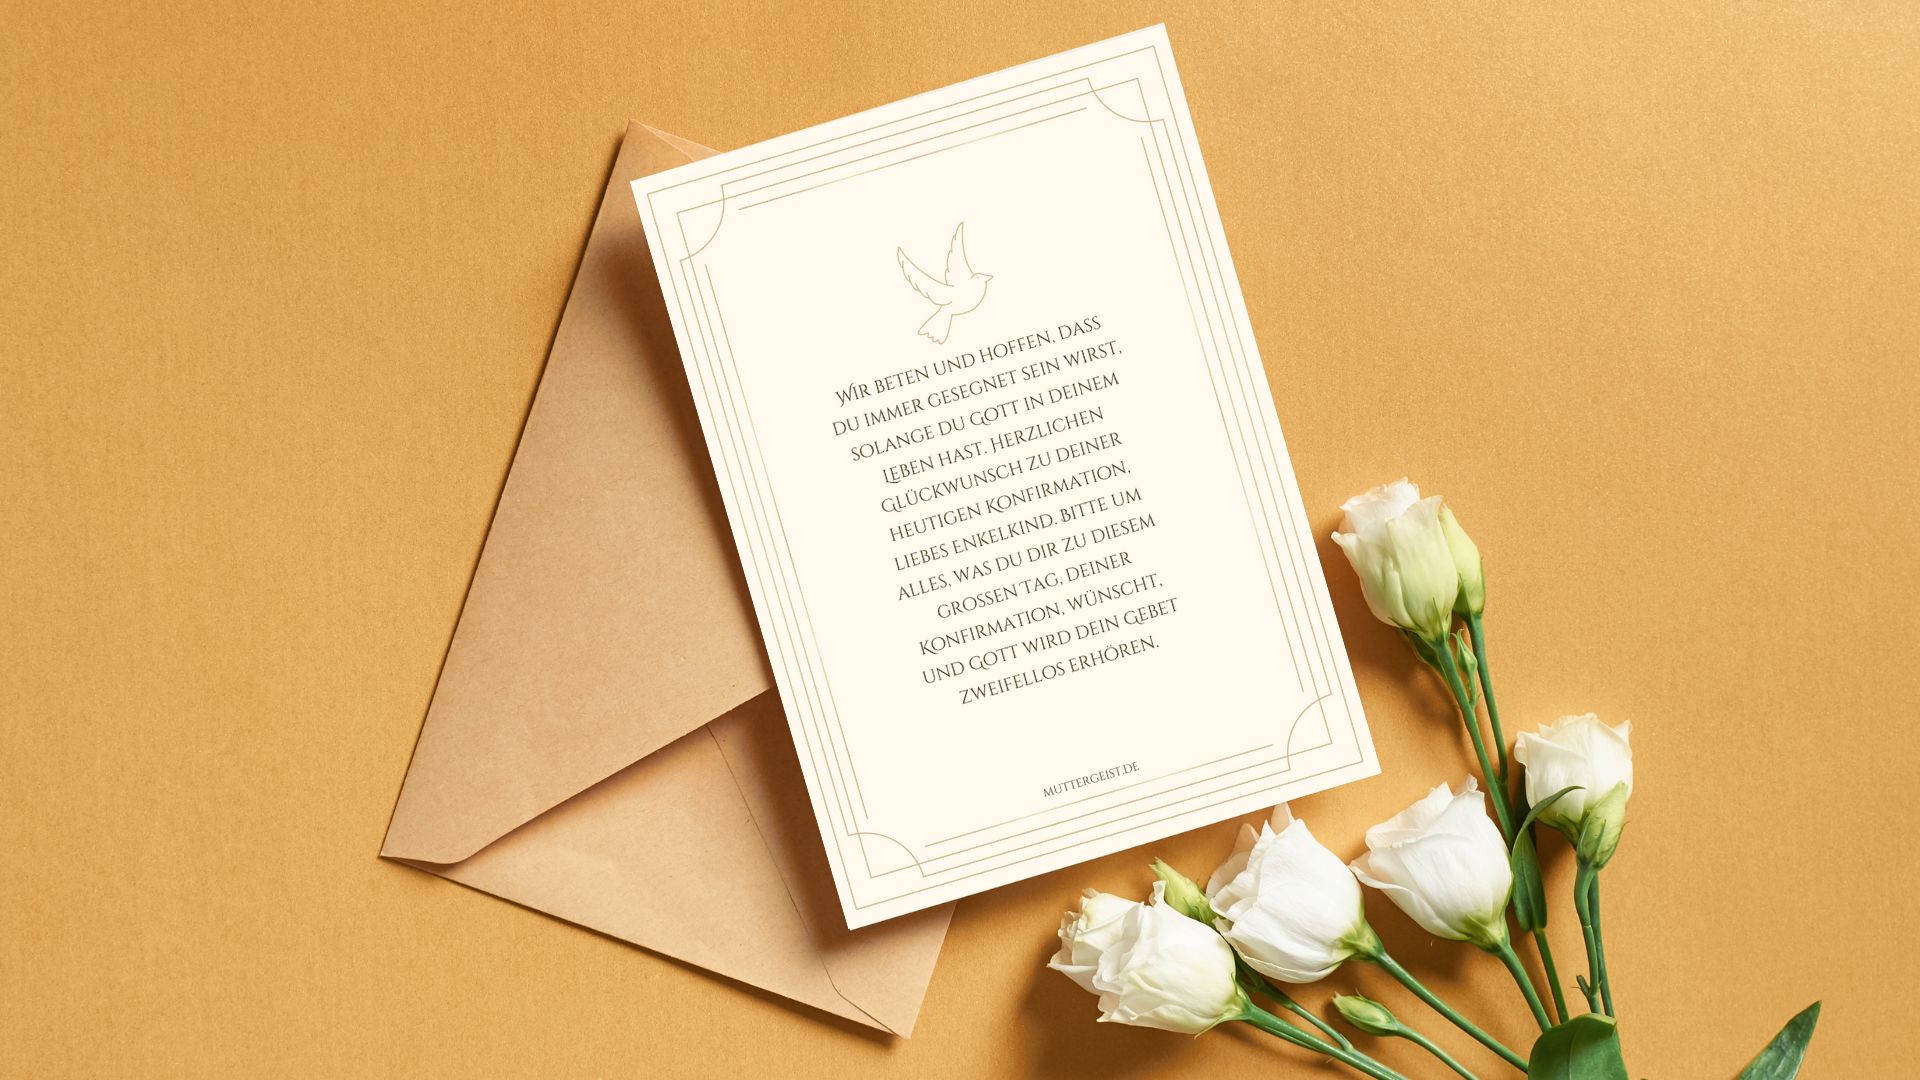 Blumen, Umschlag und eine Karte mit einem liebevollen Wunsch zur Konfirmation von den Großeltern